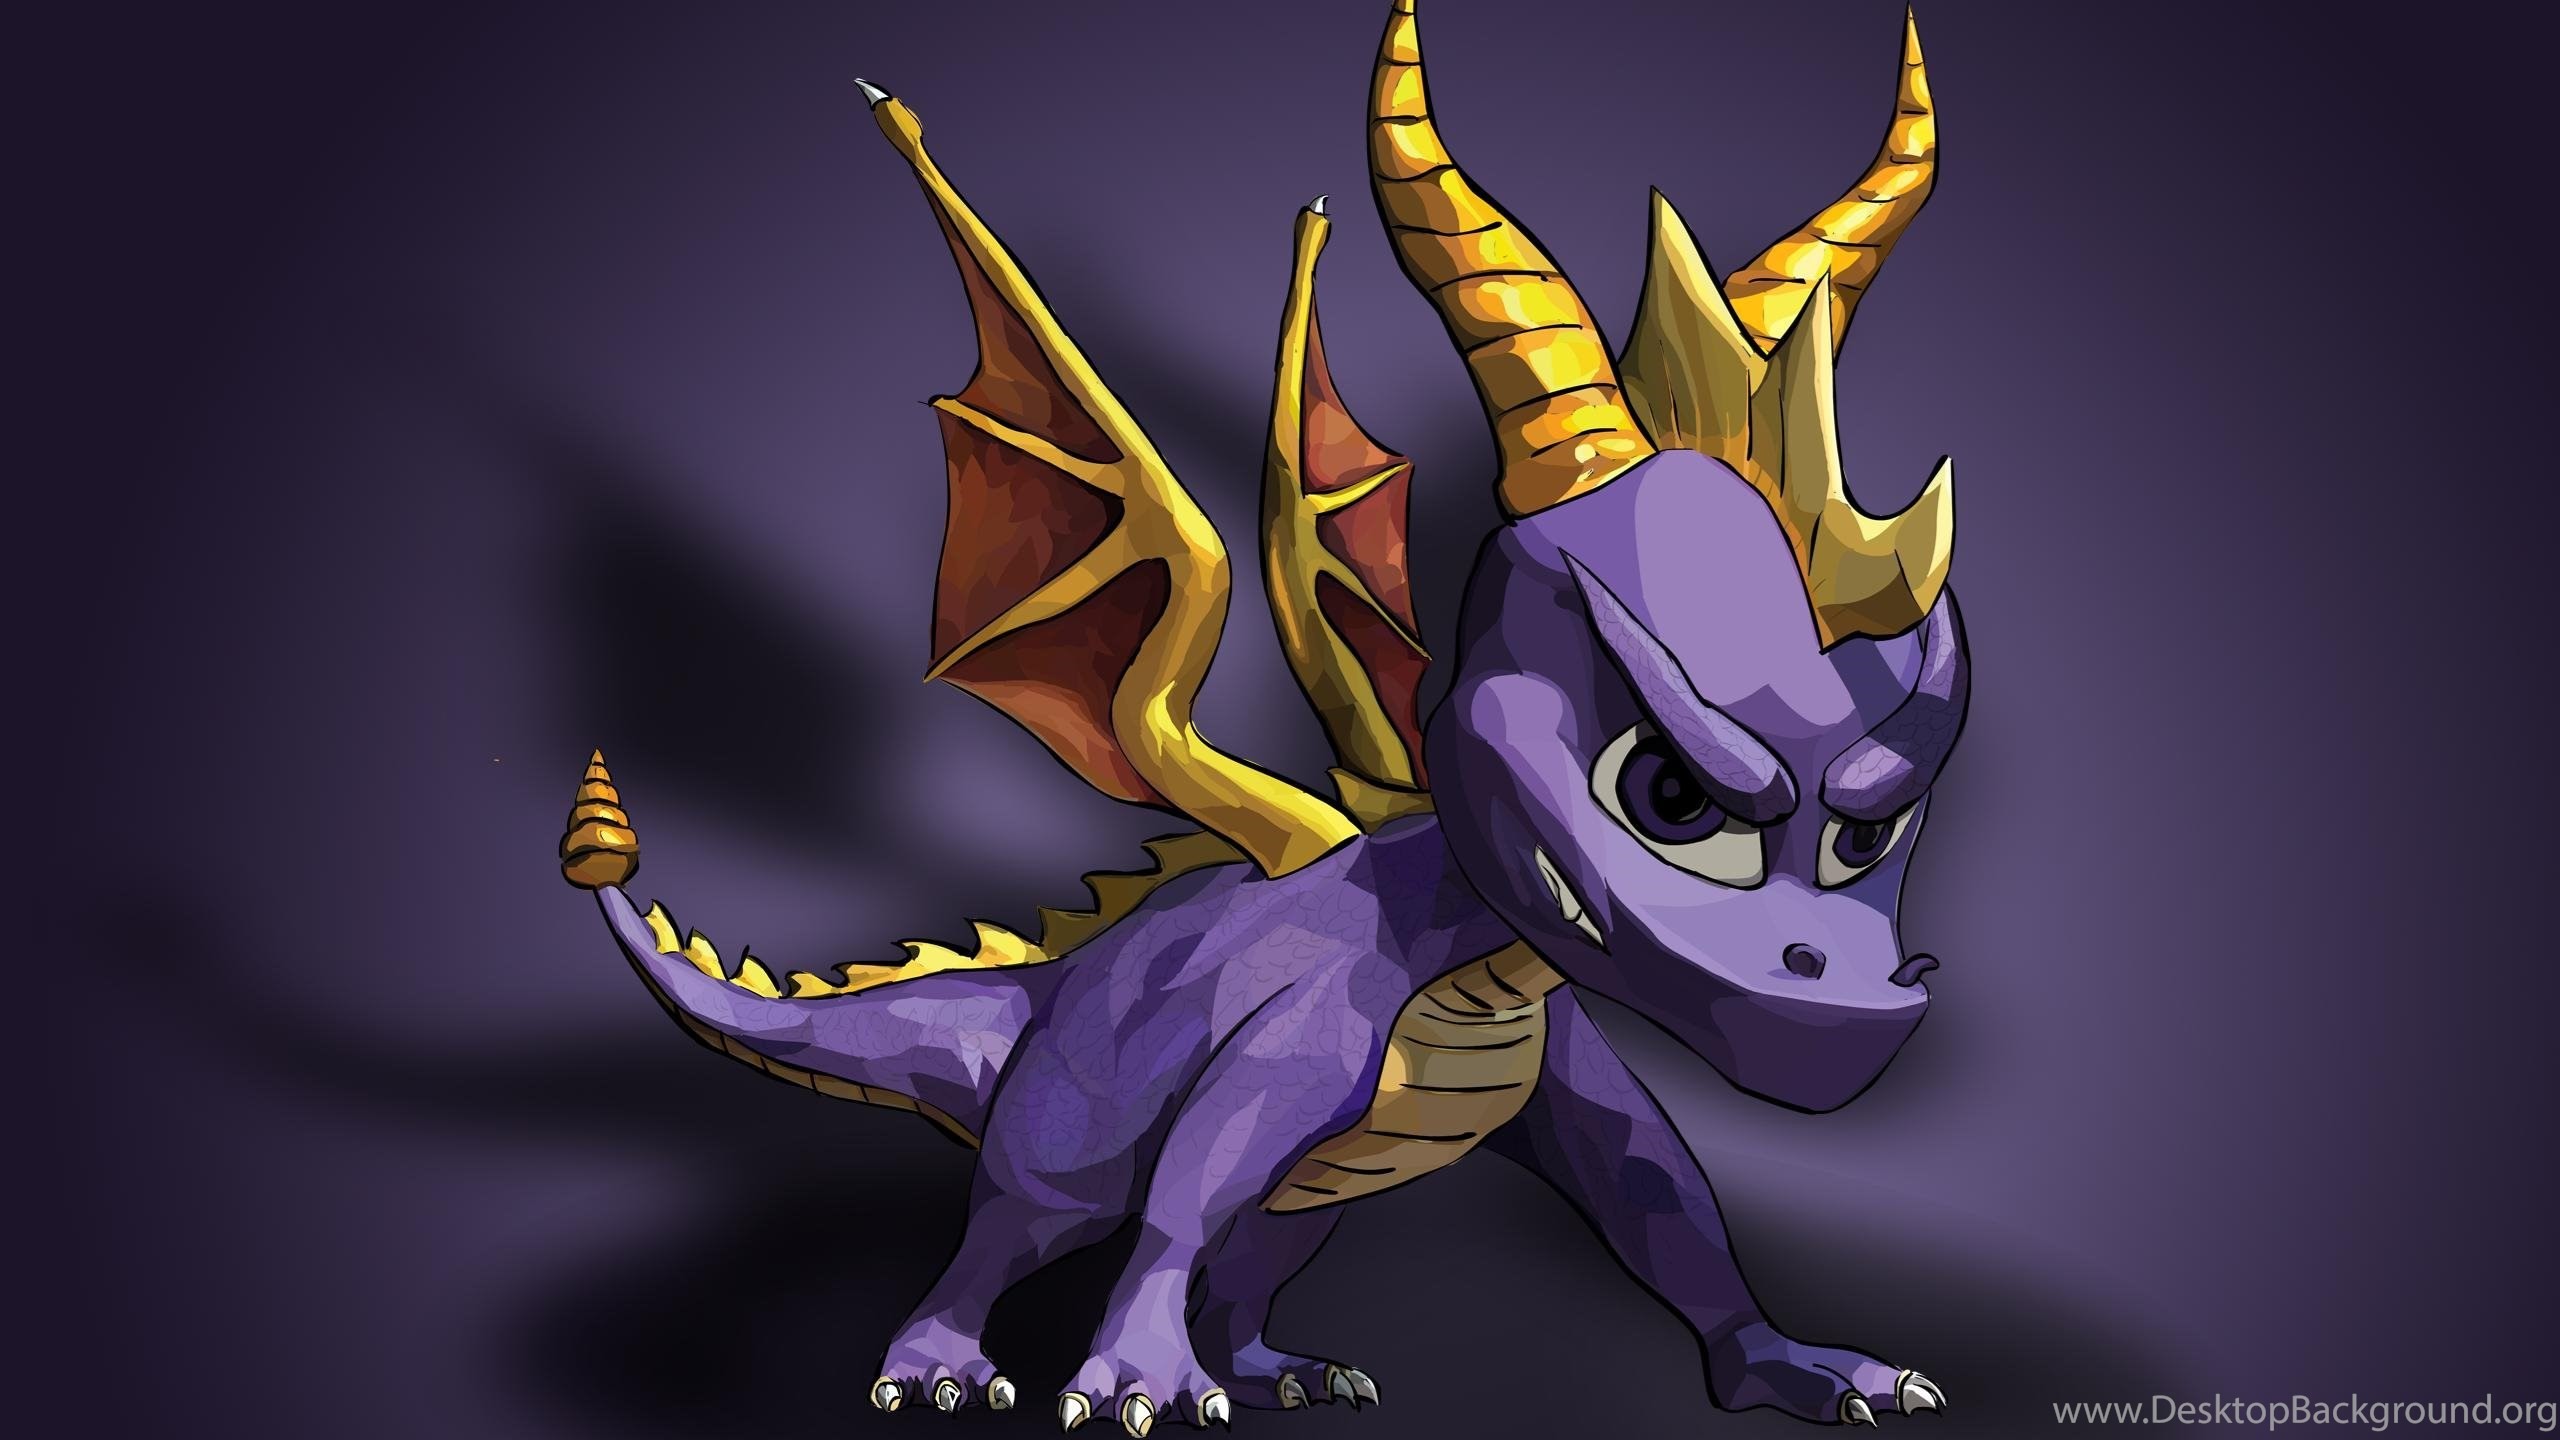 2560x1440 Spyro the Dragon HD Wallpapers